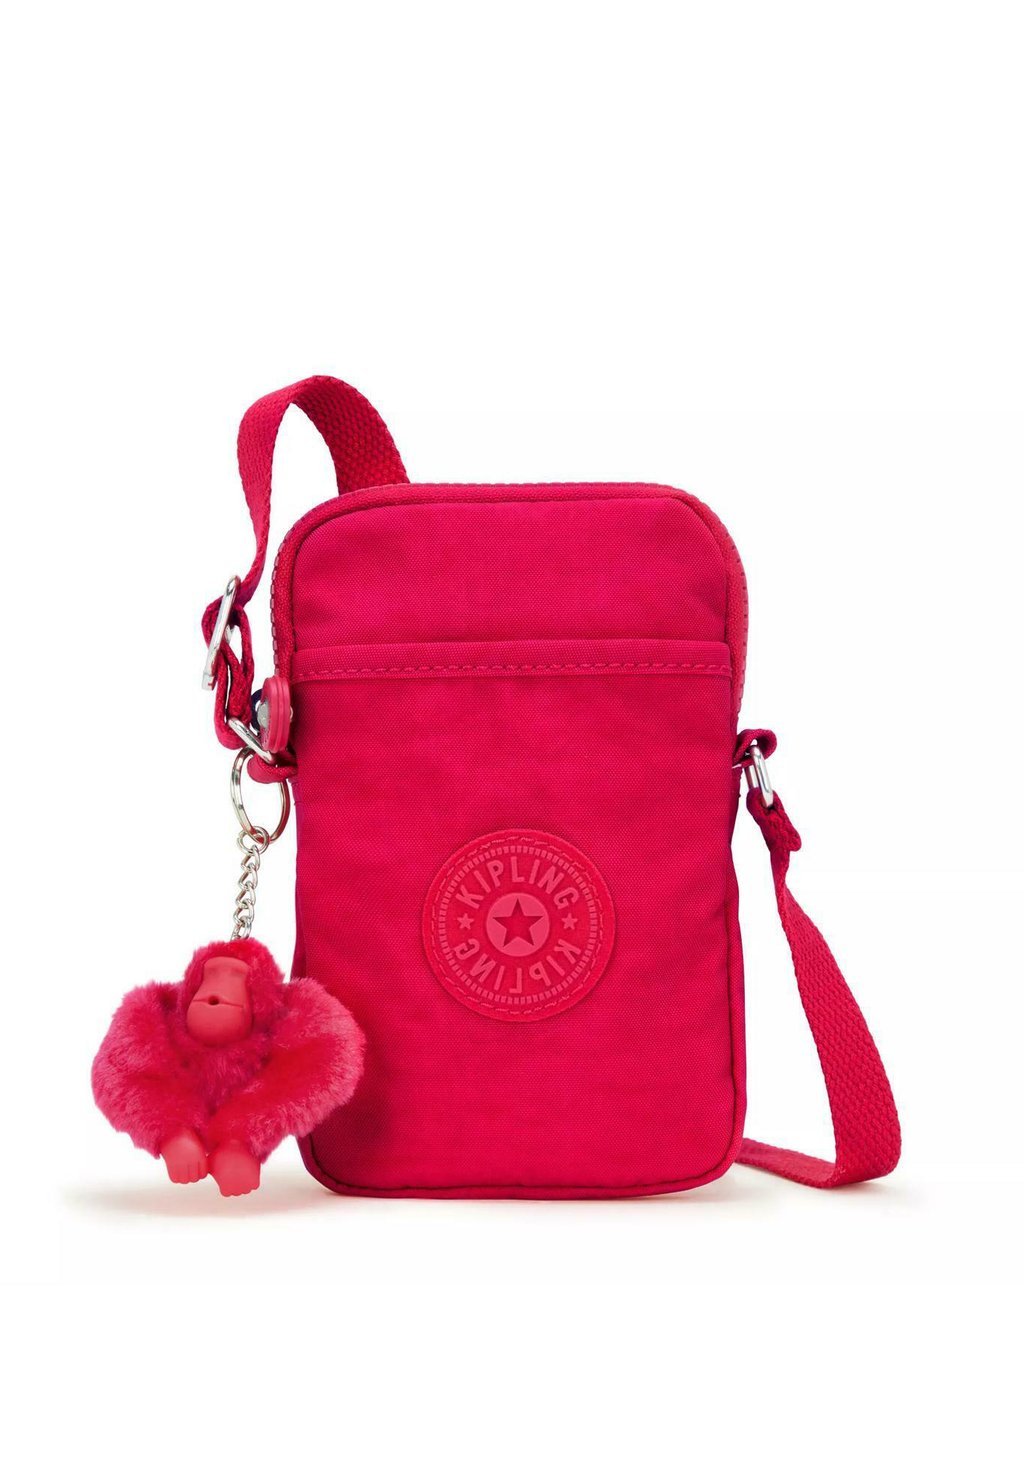 Сумка через плечо TALLY Kipling, цвет confetti pink сумка через плечо aras kipling цвет valentine pink